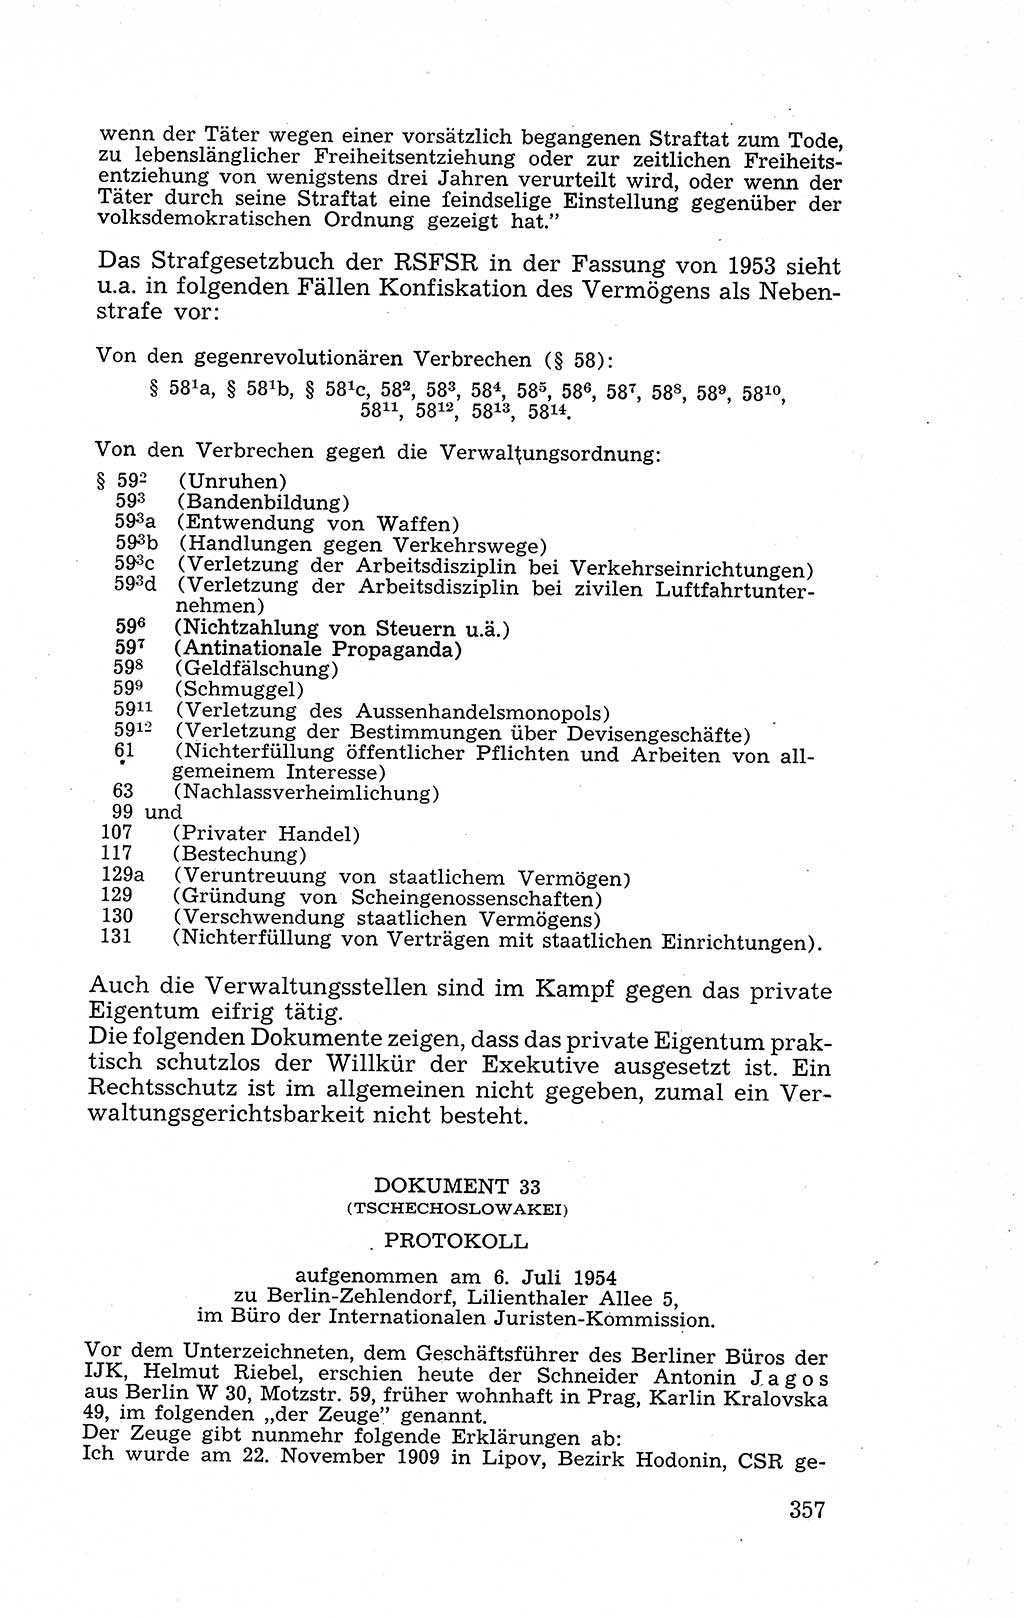 Recht in Fesseln, Dokumente, Internationale Juristen-Kommission [Bundesrepublik Deutschland (BRD)] 1955, Seite 357 (R. Dok. IJK BRD 1955, S. 357)